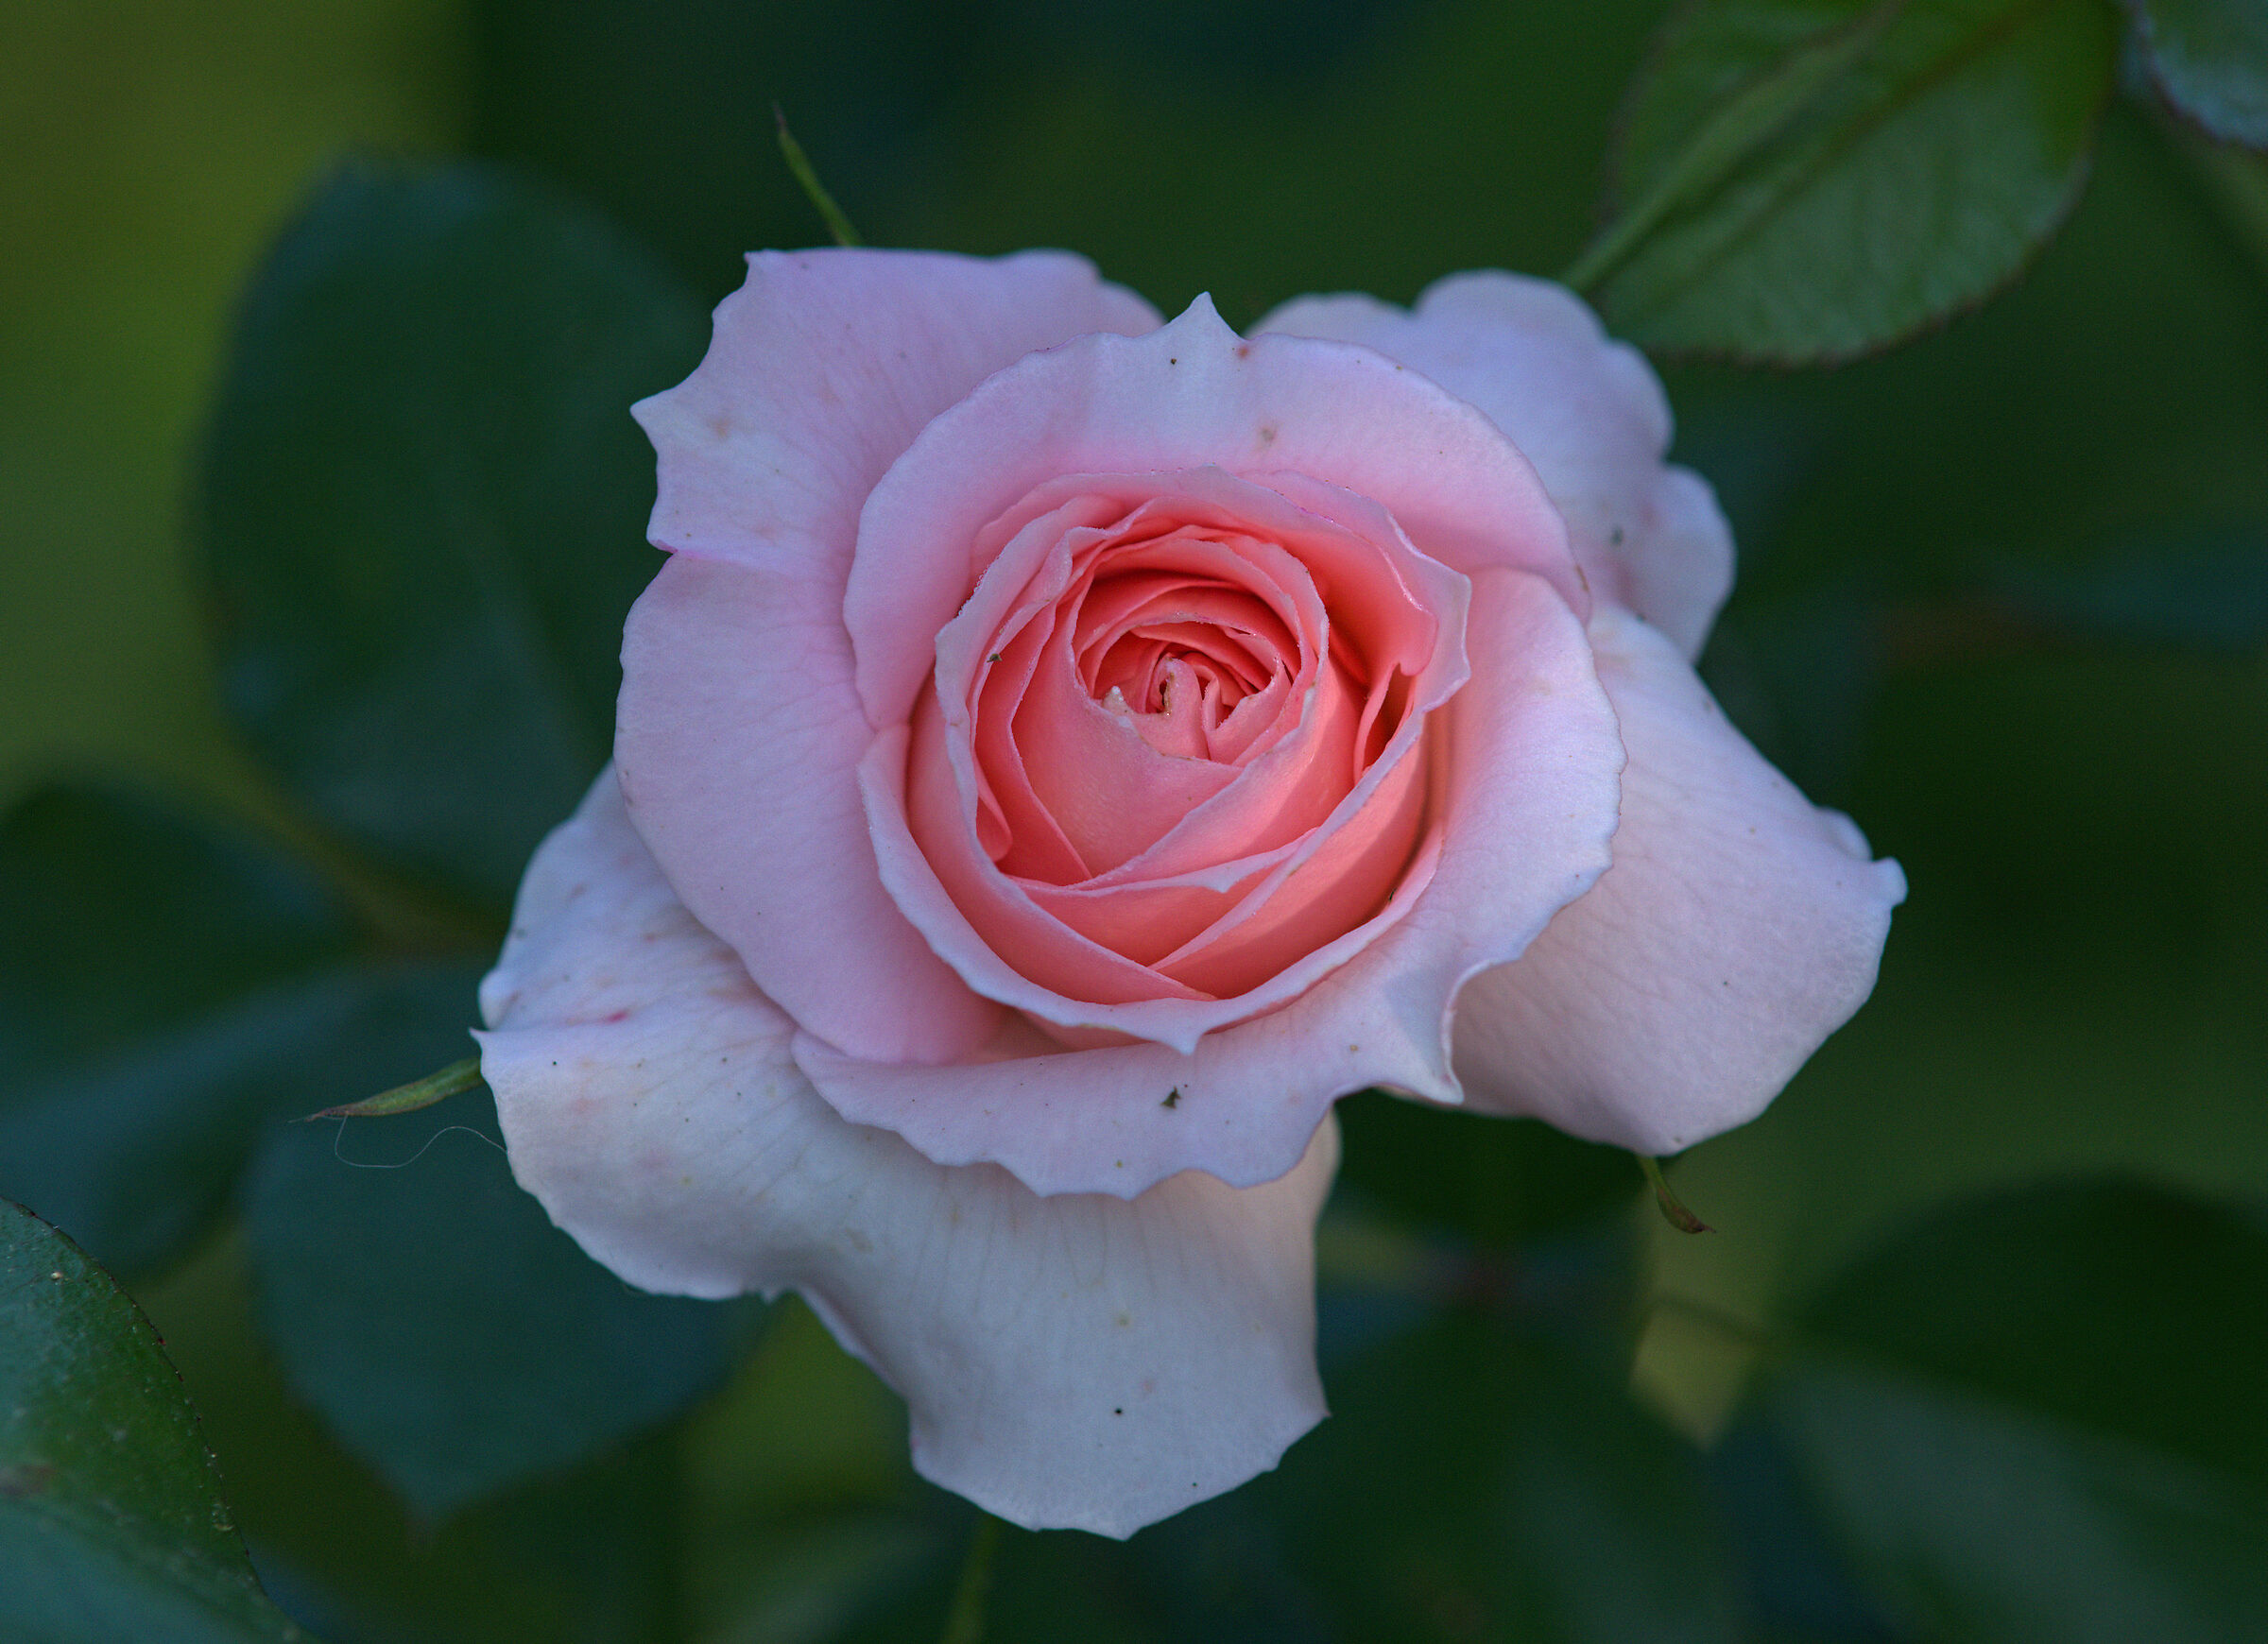 English rose...